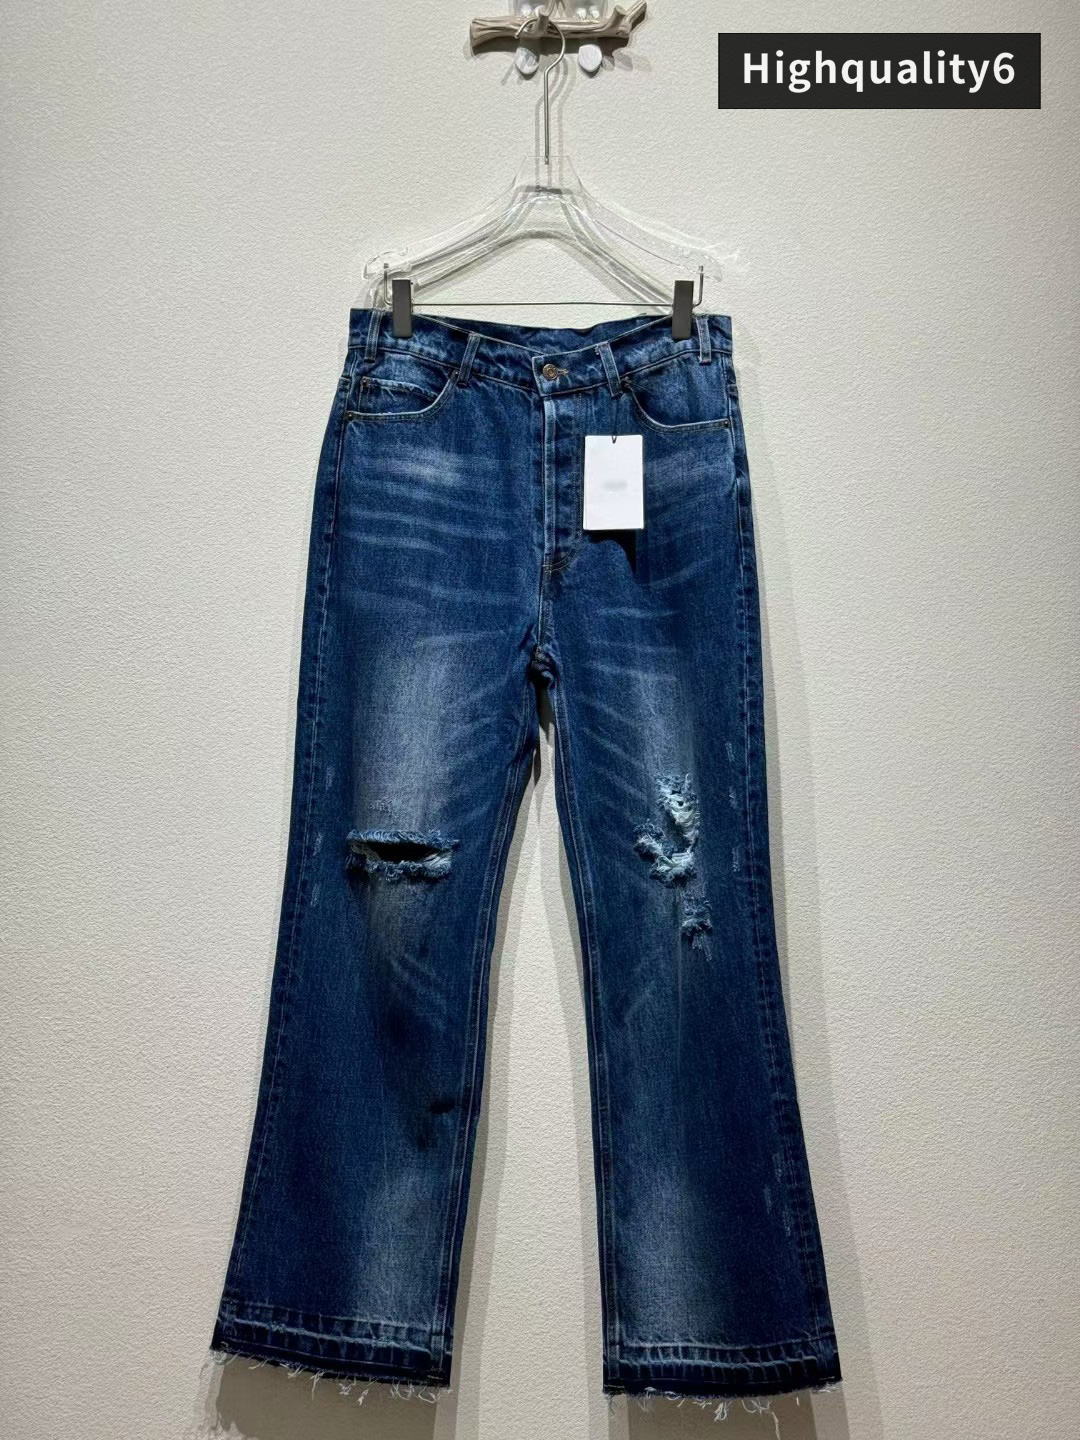 CE Brand Jeans de alta qualidade, jeans lavados de angústia clássicos, jeans finos de arco de arco triunfal cortado, calças compridas da moda e versátil, frete grátis